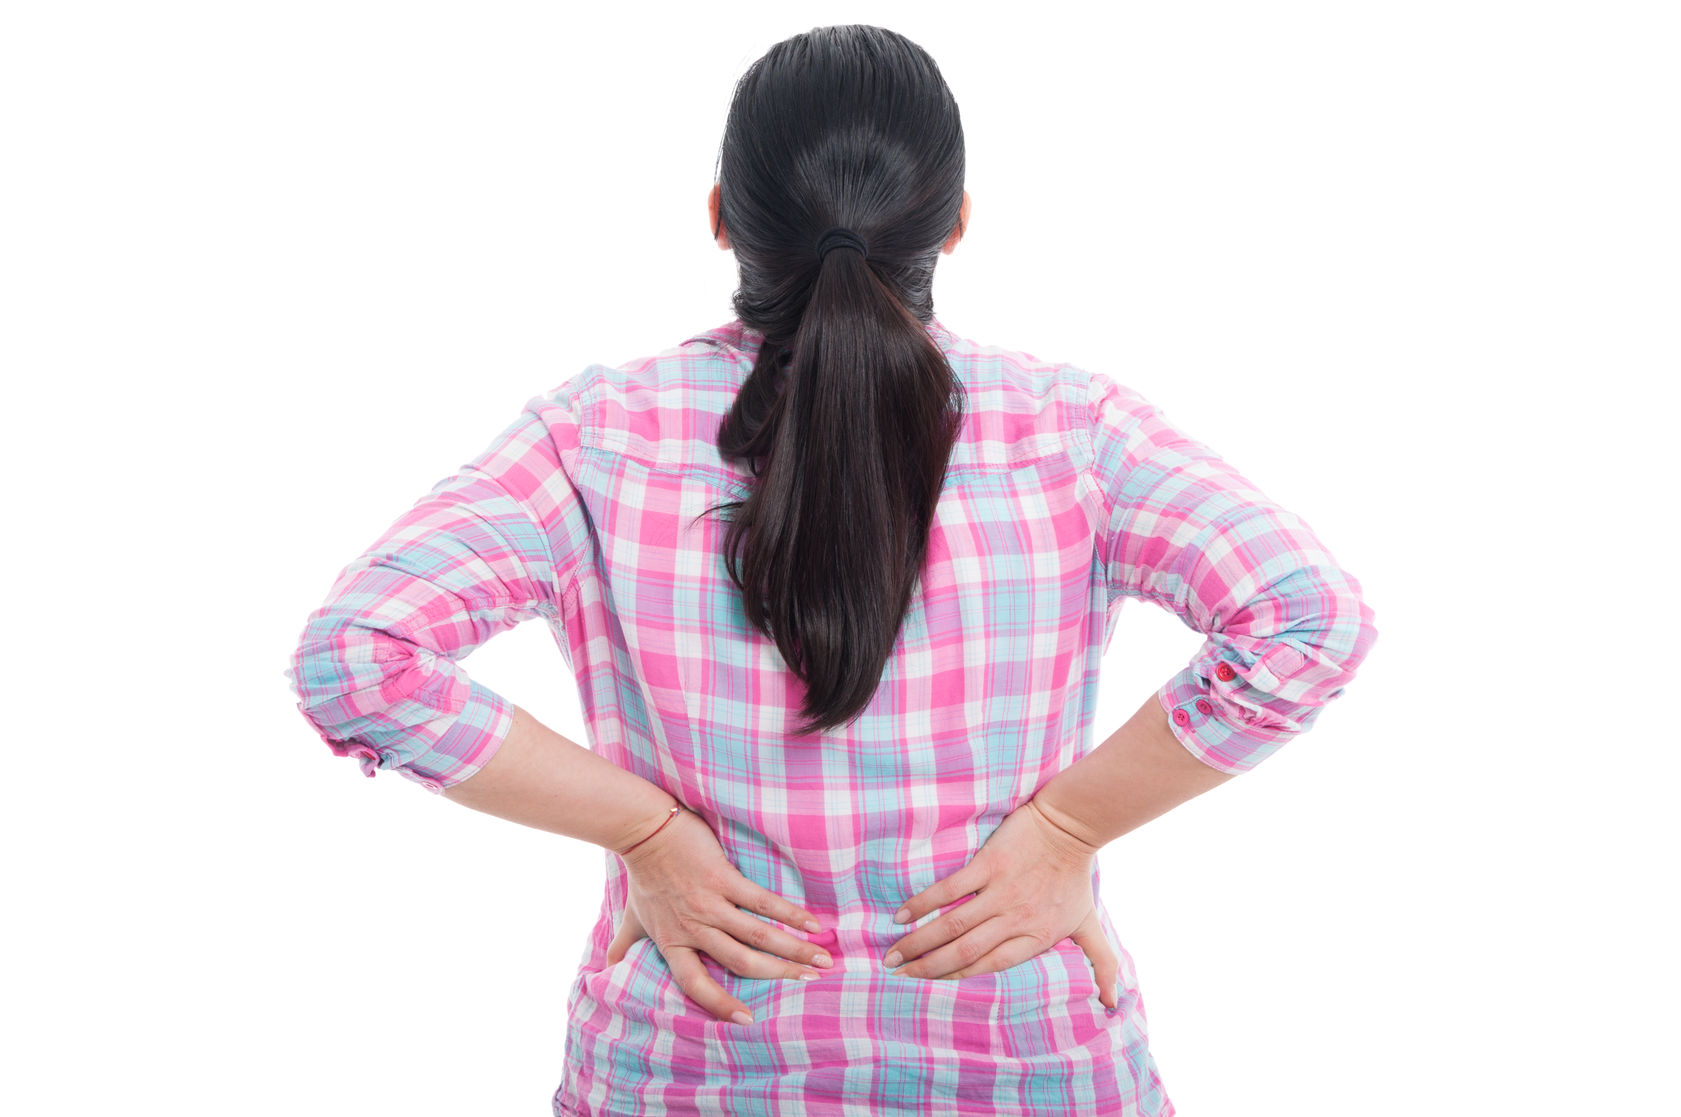 Tratamiento del dolor de espalda media  Nuevo especialista en columna  vertebral Yprk